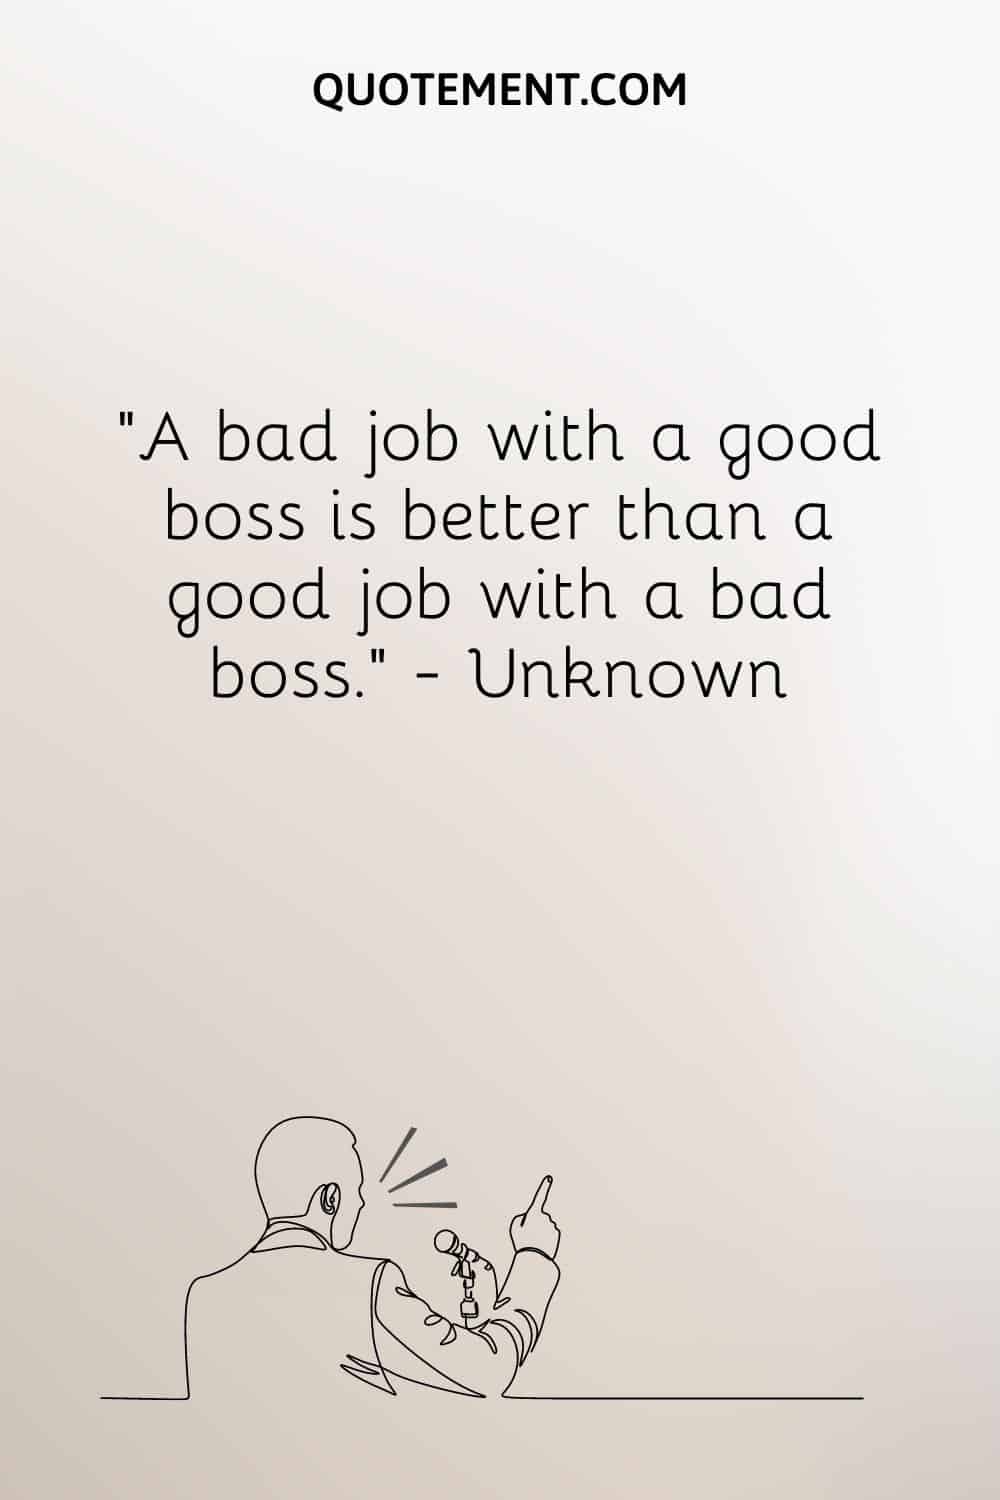 Un mal trabajo con un buen jefe es mejor que un buen trabajo con un mal jefe